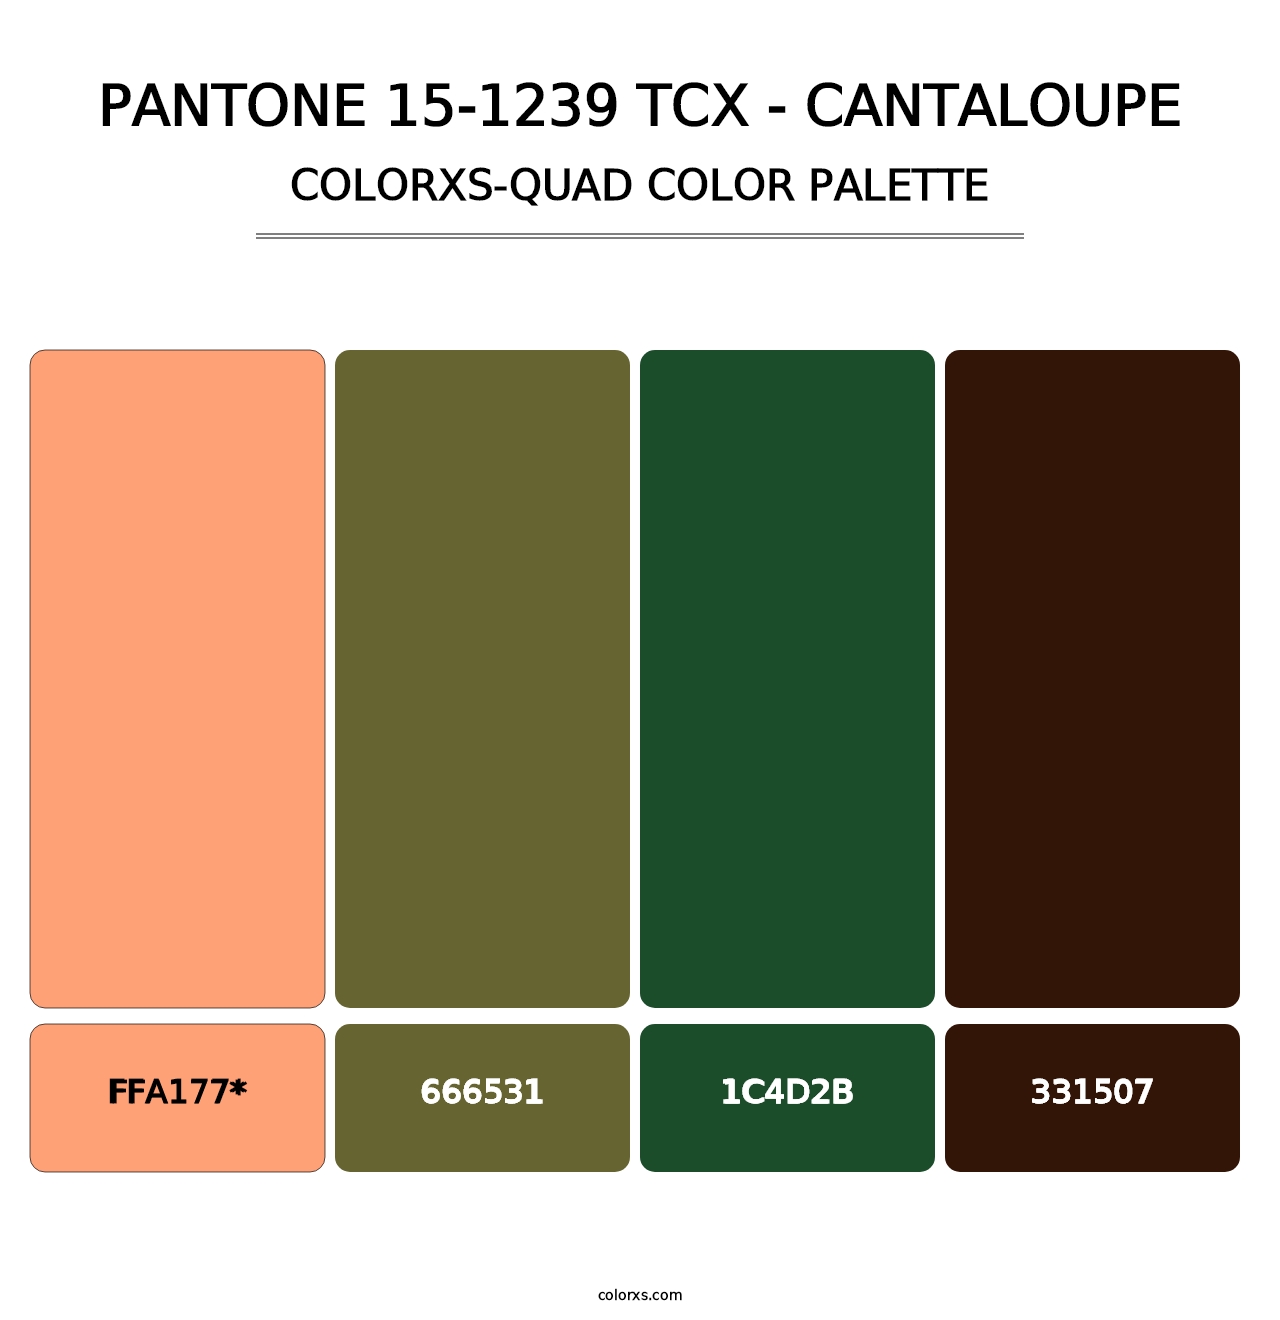 PANTONE 15-1239 TCX - Cantaloupe - Colorxs Quad Palette